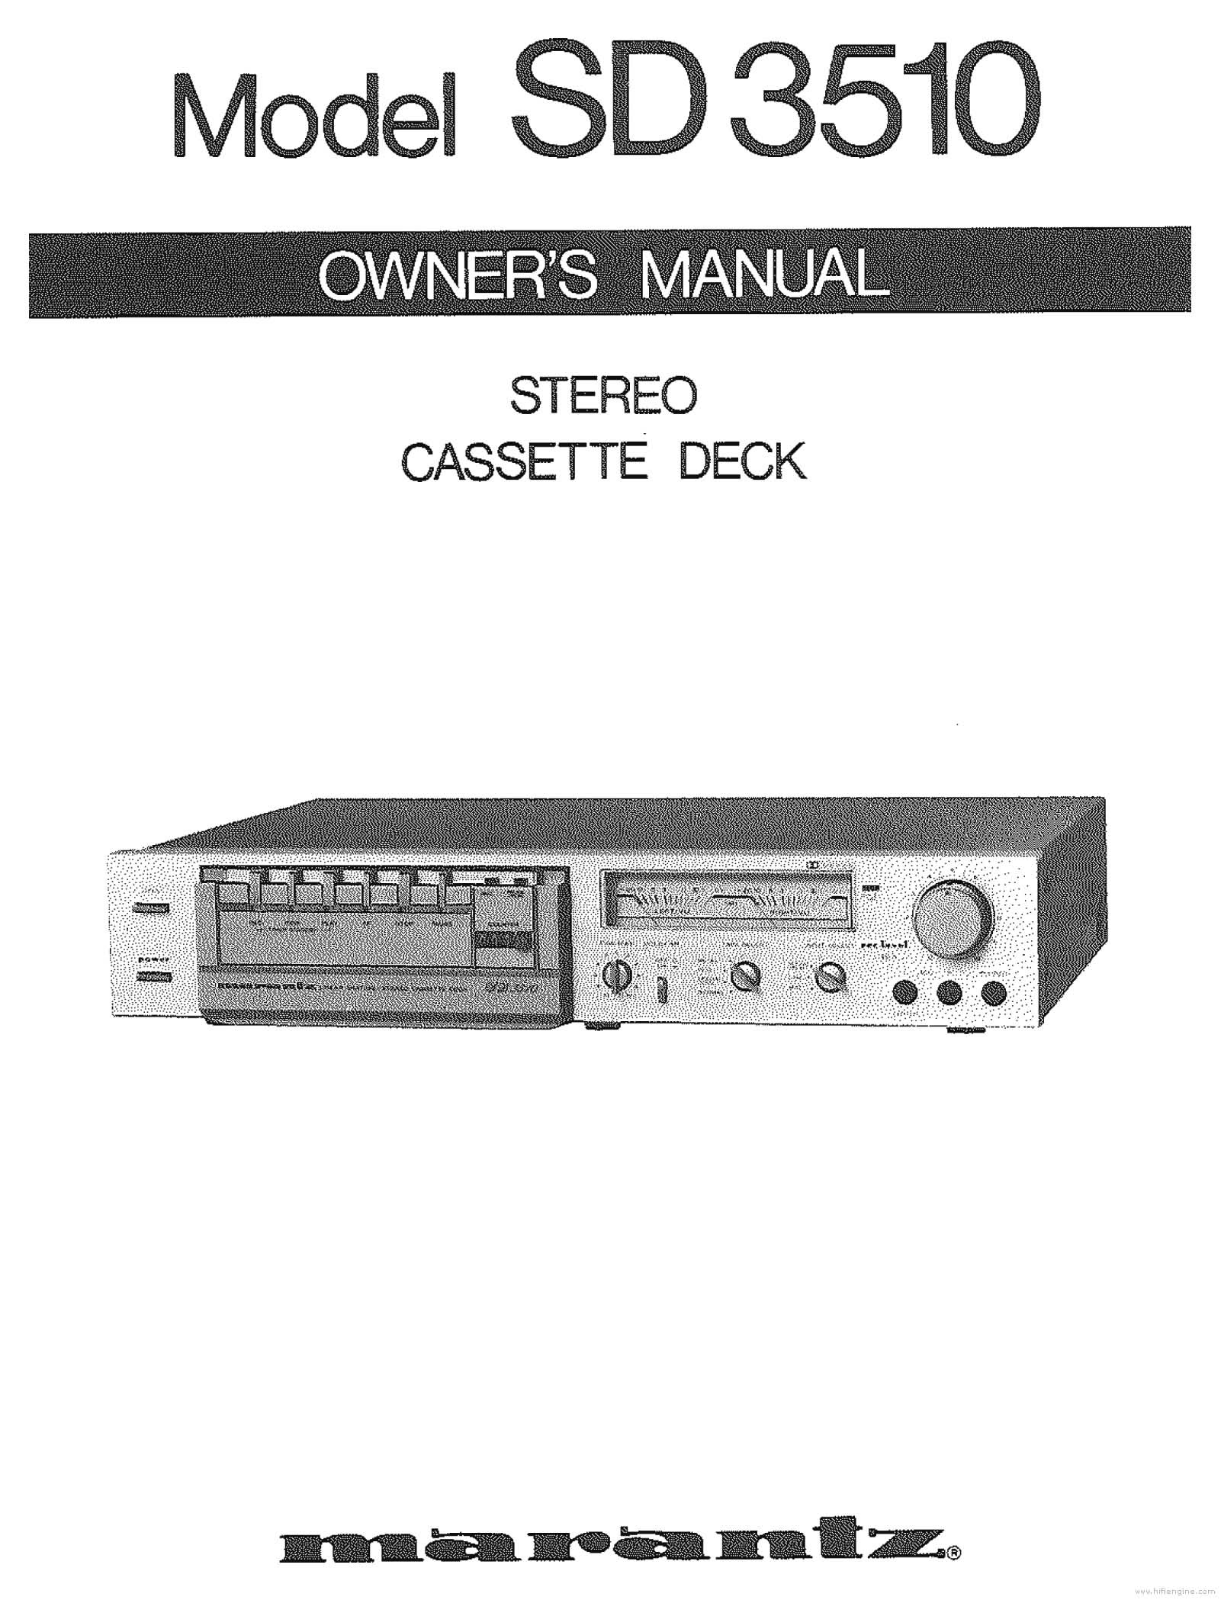 Marantz SD-3510 Owners Manual